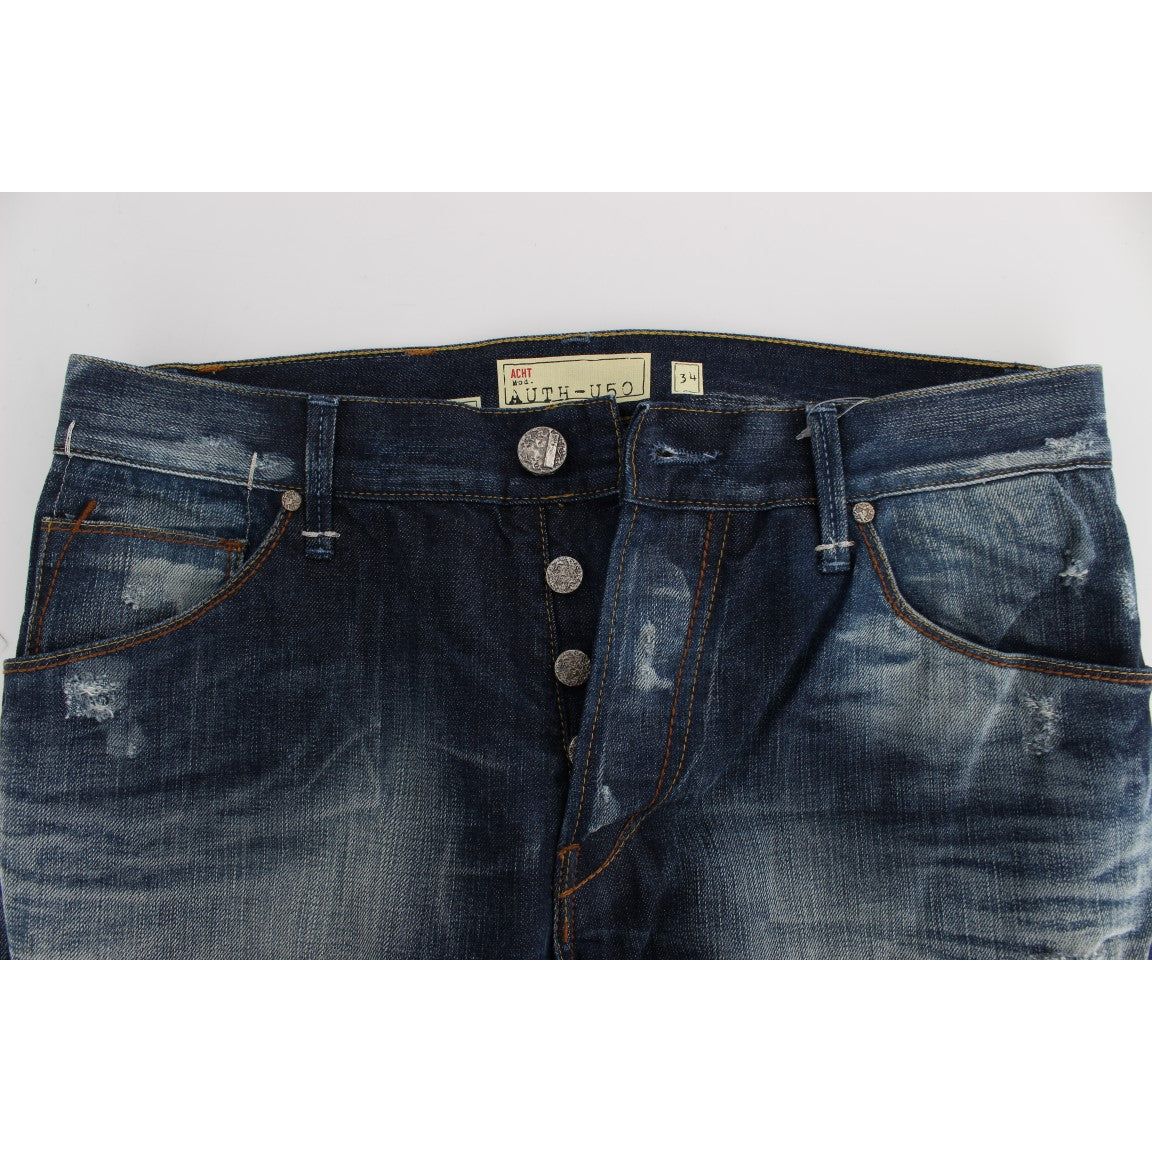 Acht Authentic Regular Fit Blue Wash Jeans blue-wash-cotton-denim-regular-fit-jeans-2 292687-blue-wash-cotton-denim-regular-fit-jeans-4-4.jpg